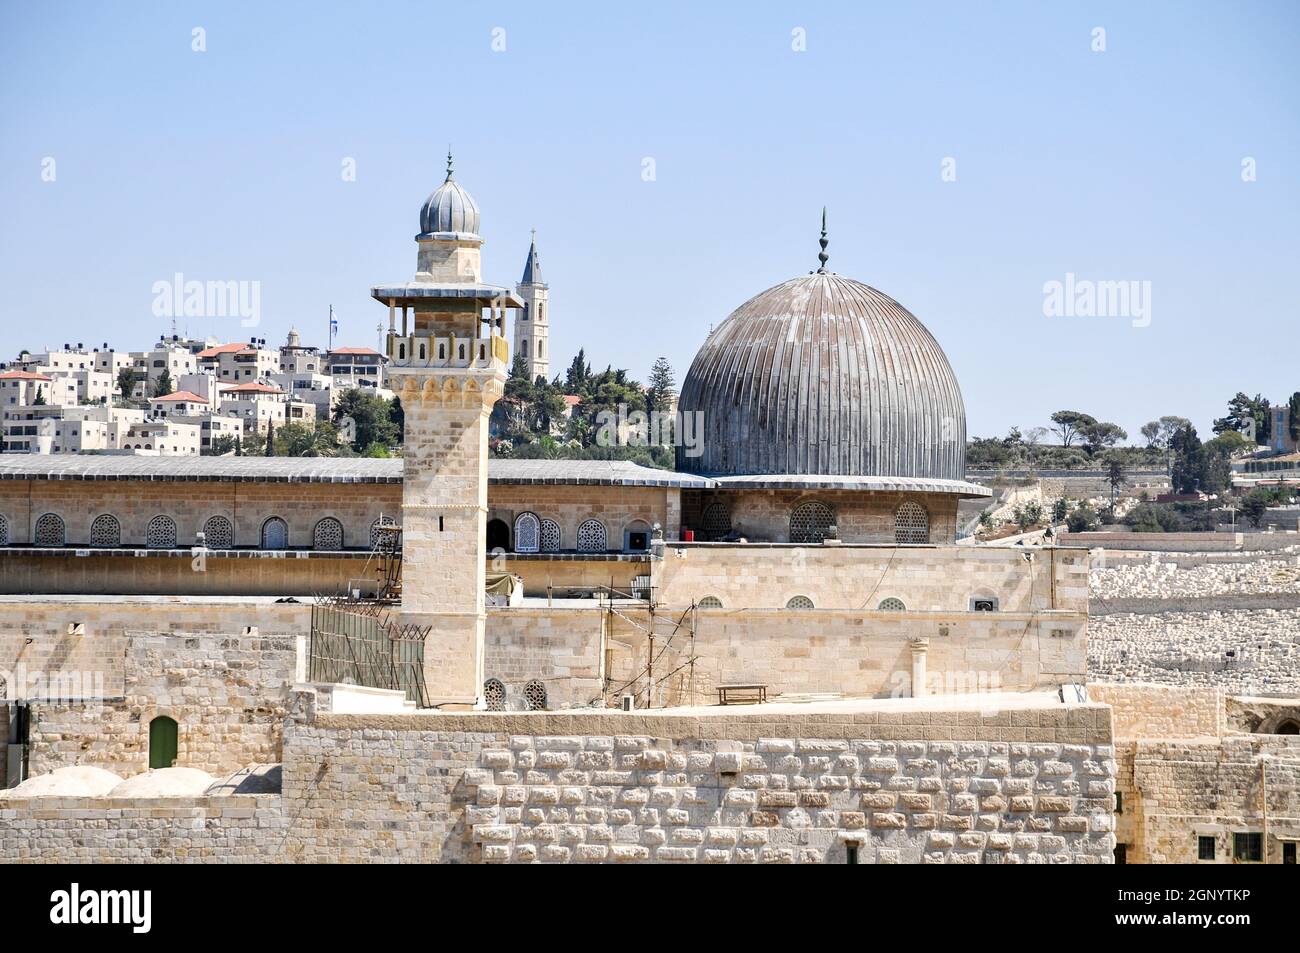 Israele, Gerusalemme, Haram esh Sharif (Temple Mount) Vista del sud-ovest. Il minareto e la cupola della Moschea di Al-Aqsa Foto Stock